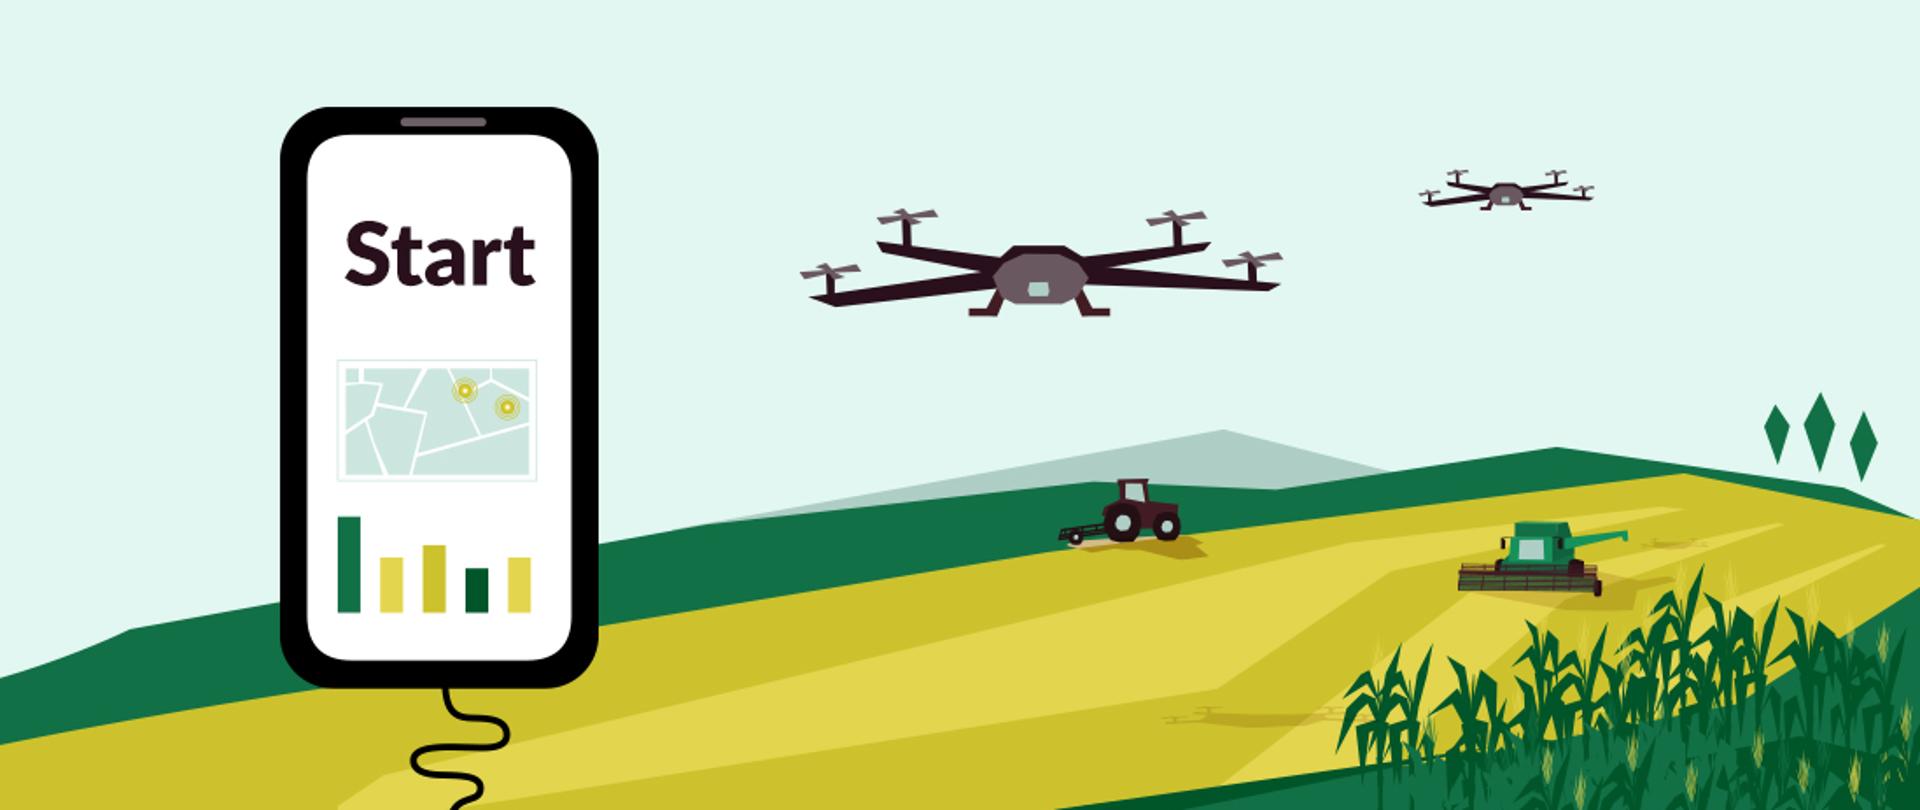 Baner przedstawia pole: traktor, kombajn, dwa drony, smartfon z napisem "Start". 